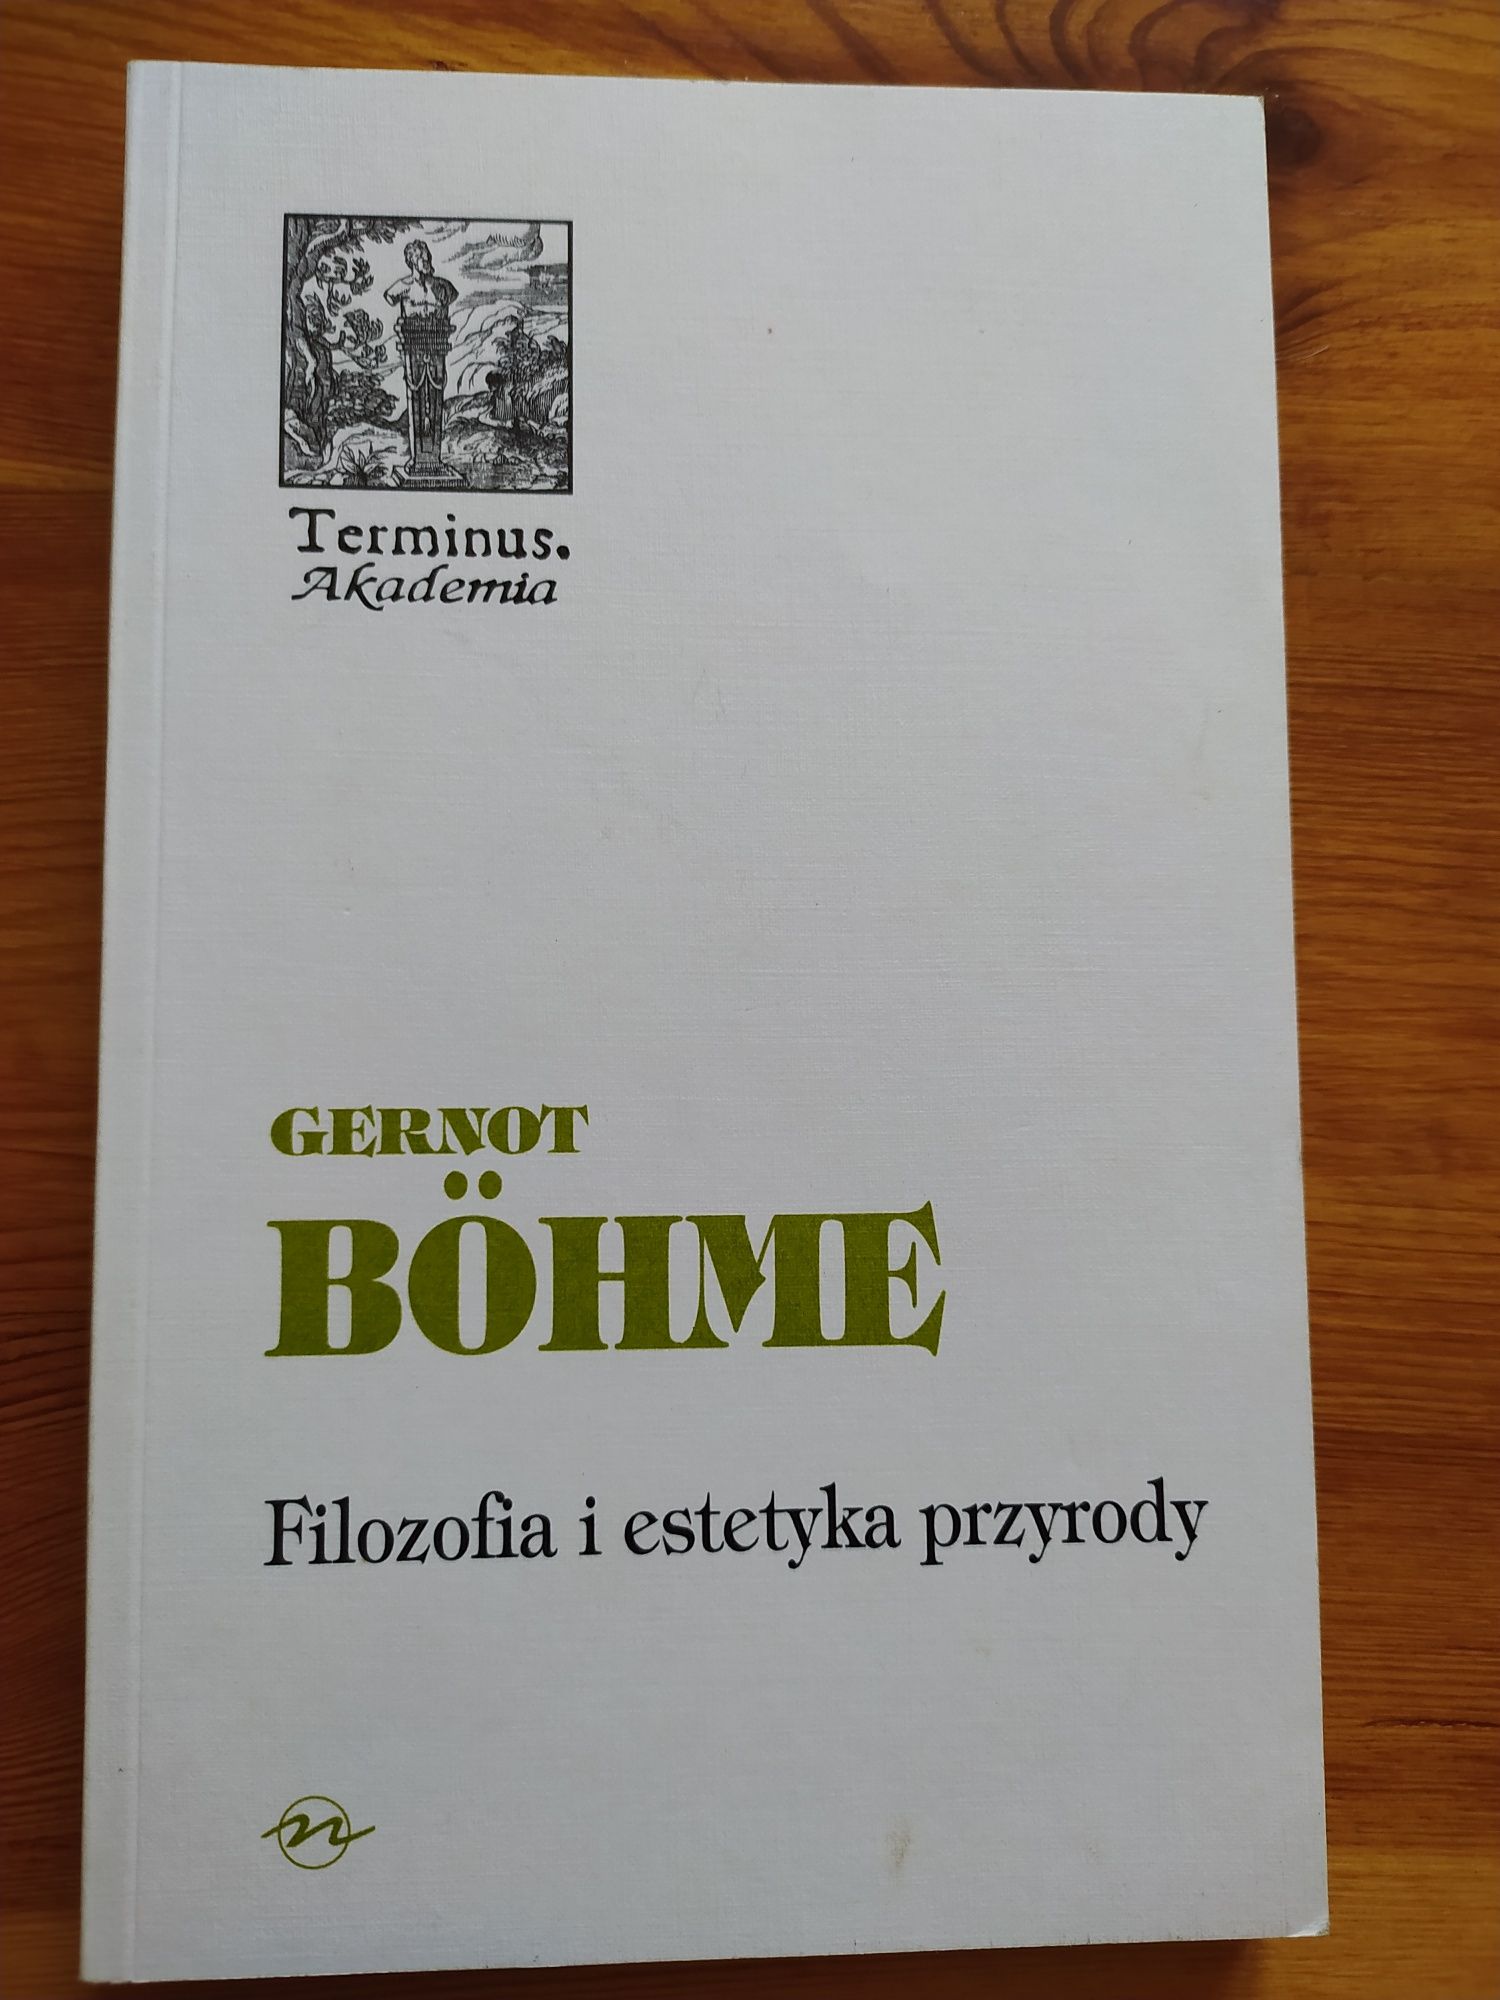 Książka "Filozofia i estetyka przyrody" Gernot Böhme